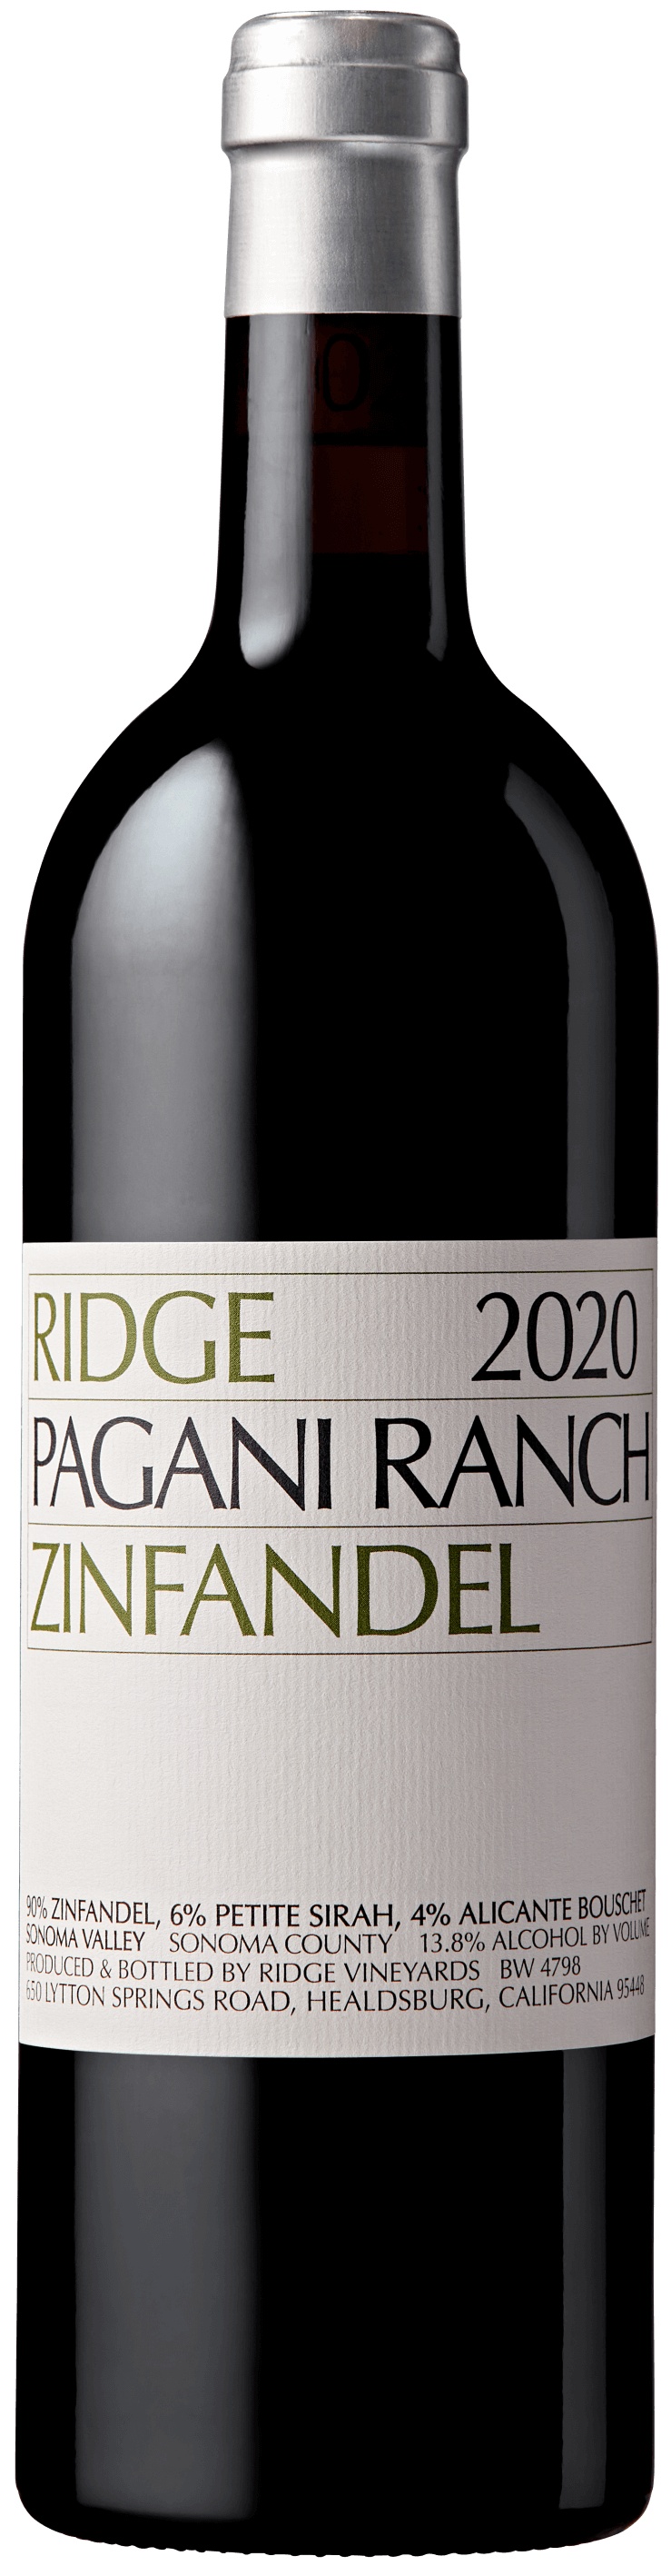 2020 Pagani Ranch Zinfandel